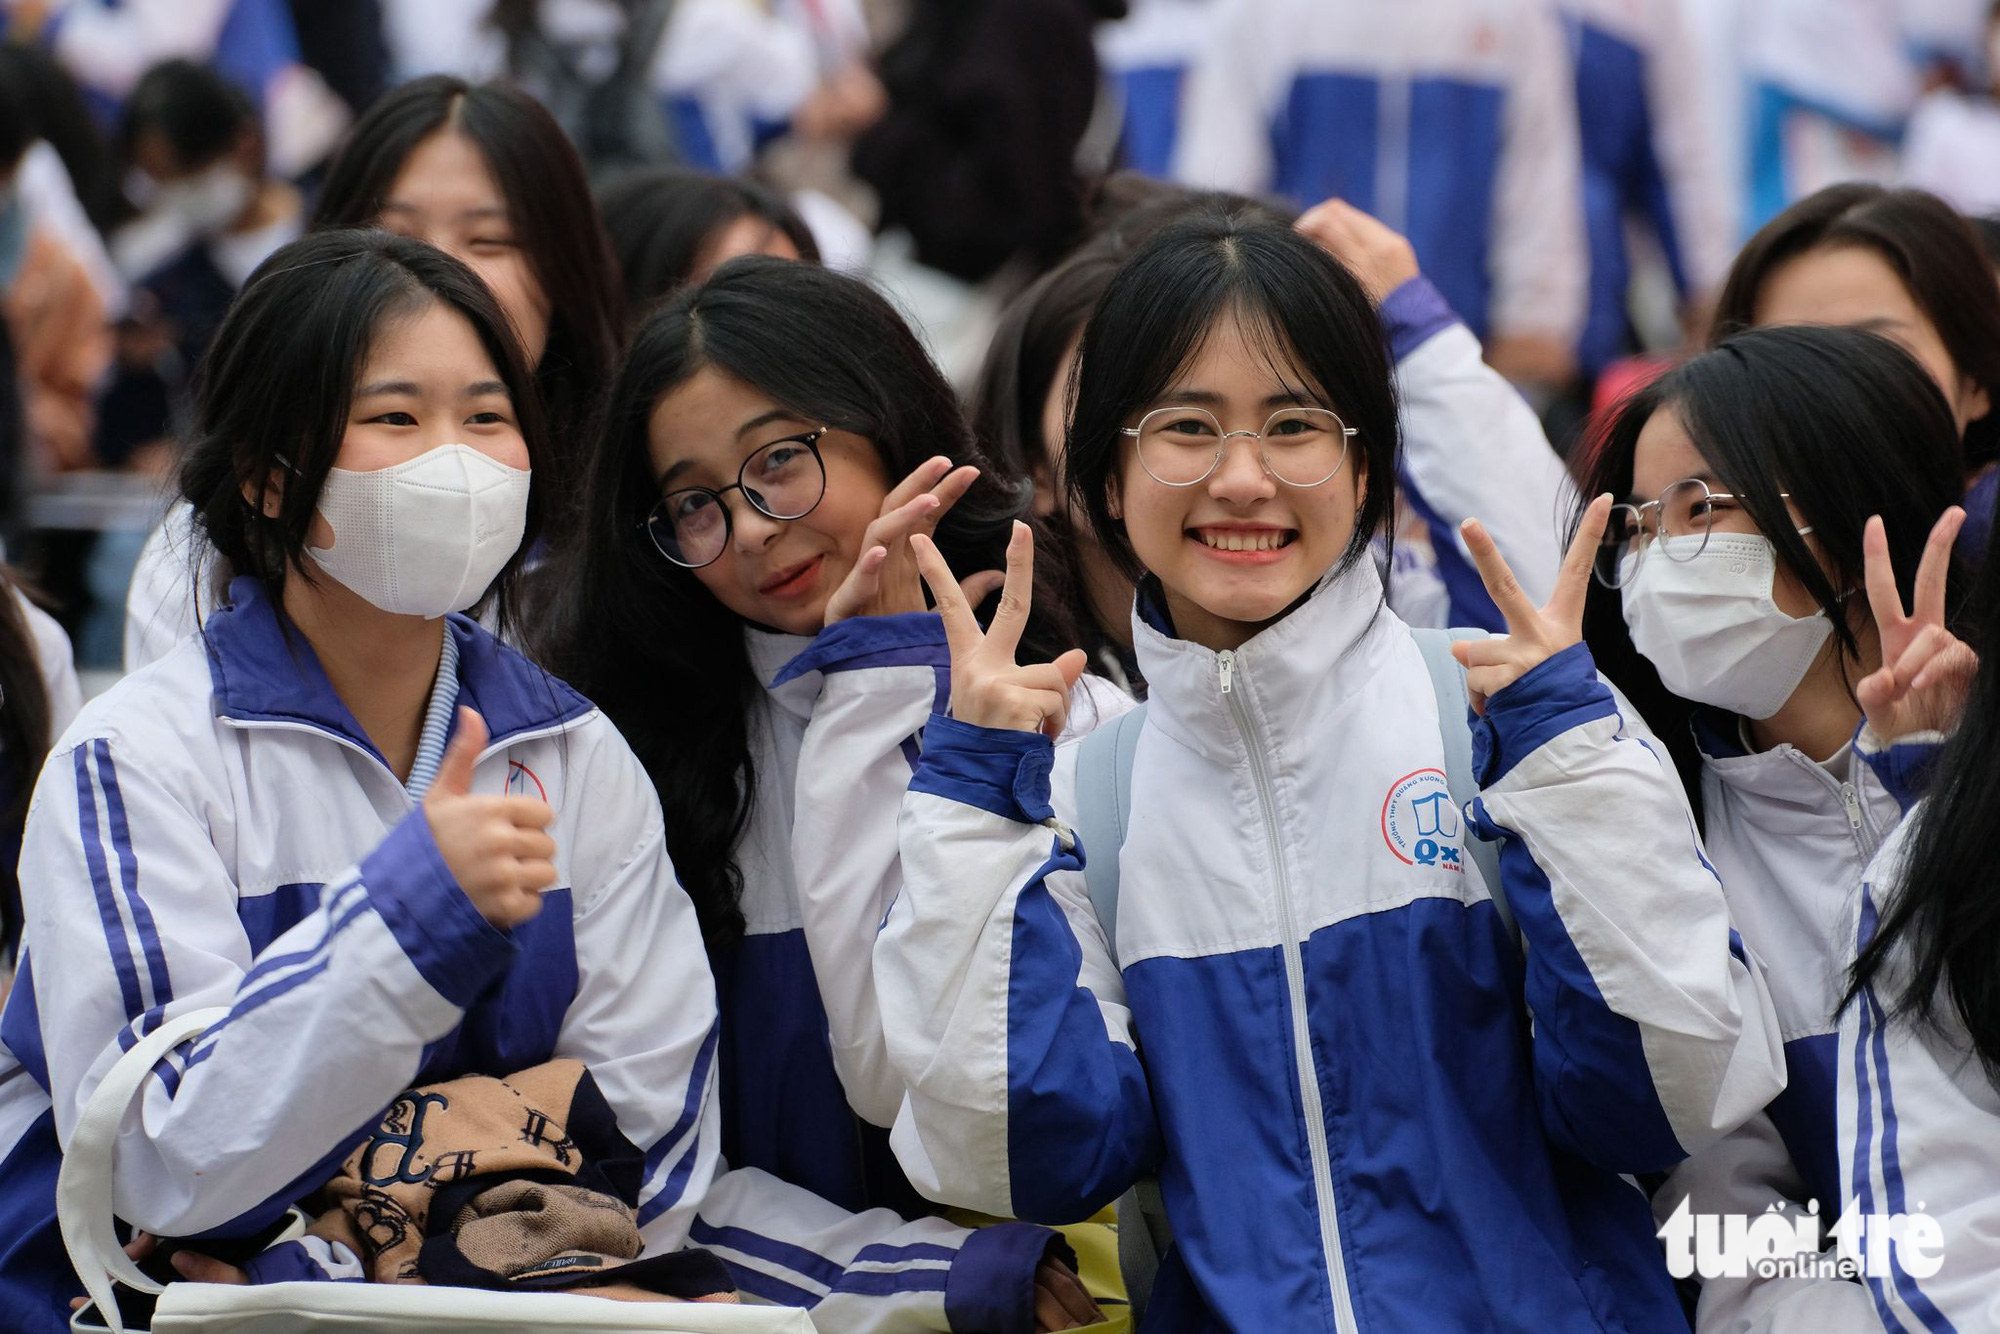 Đại học Quốc gia Hà Nội tăng chỉ tiêu tuyển sinh, mở thêm 4 ngành mới - Ảnh 1.